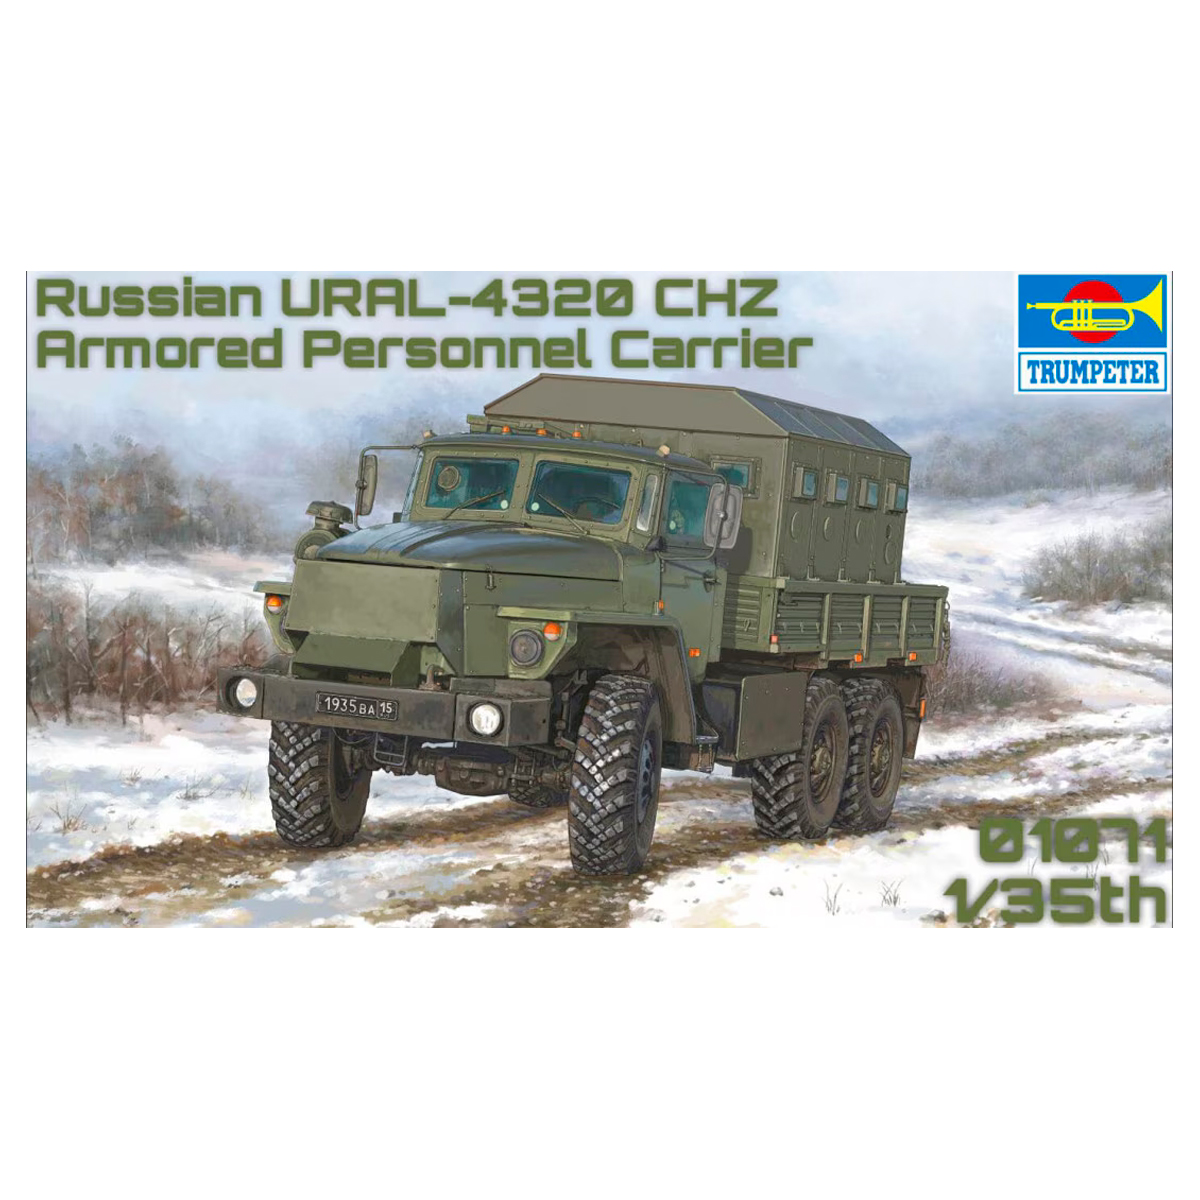 Russian Ural-4320 CHZ 1/35